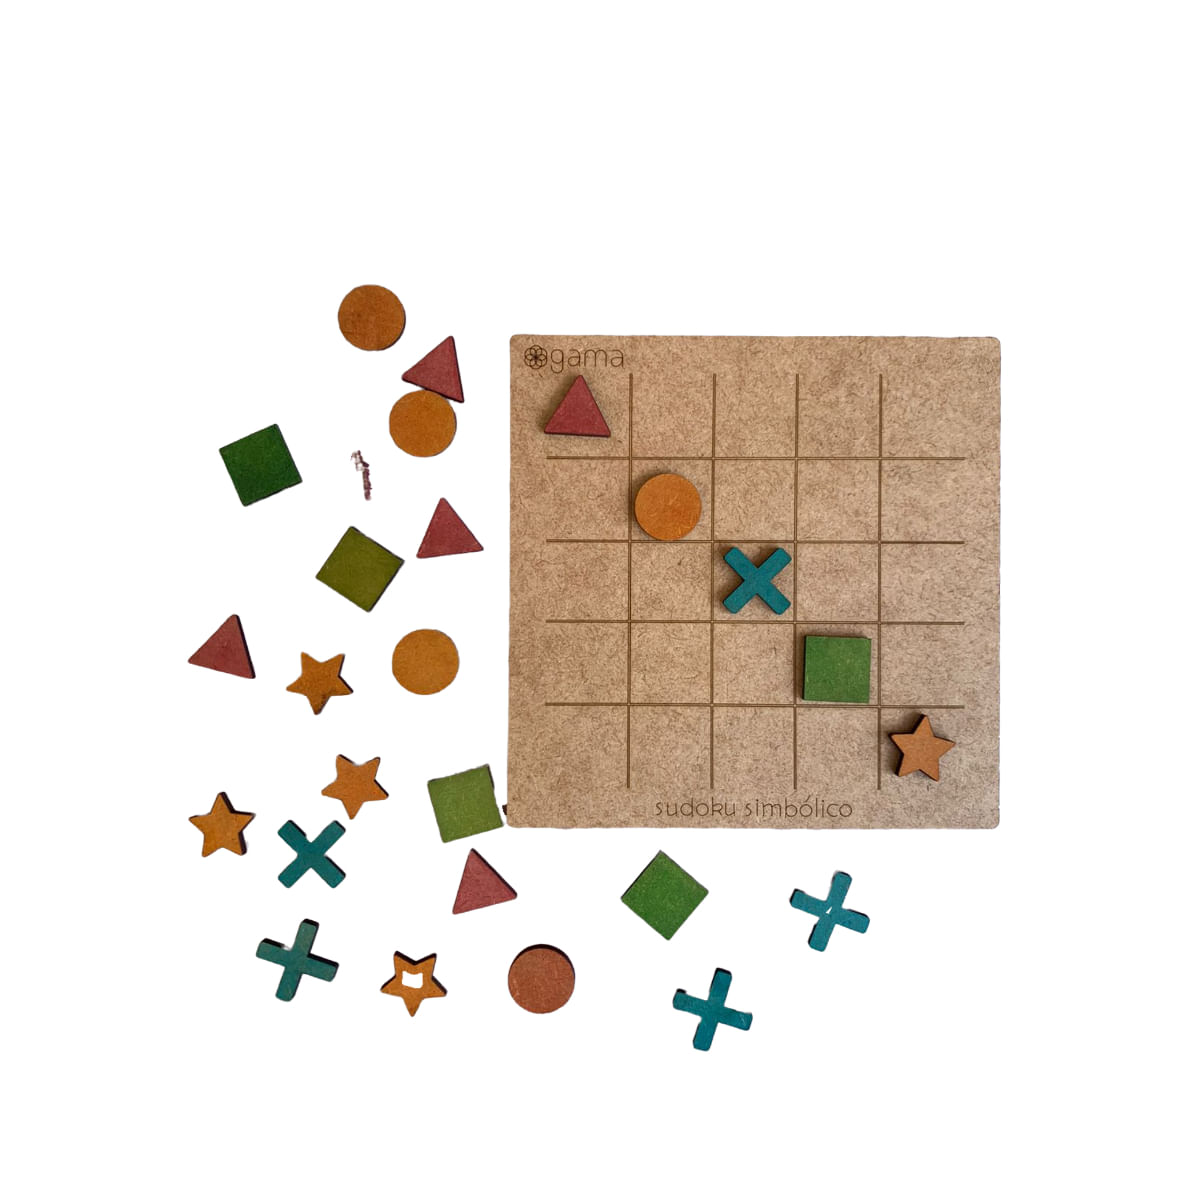 6 Jogos duplos – Criptograma + Sudoku – Lição Prática